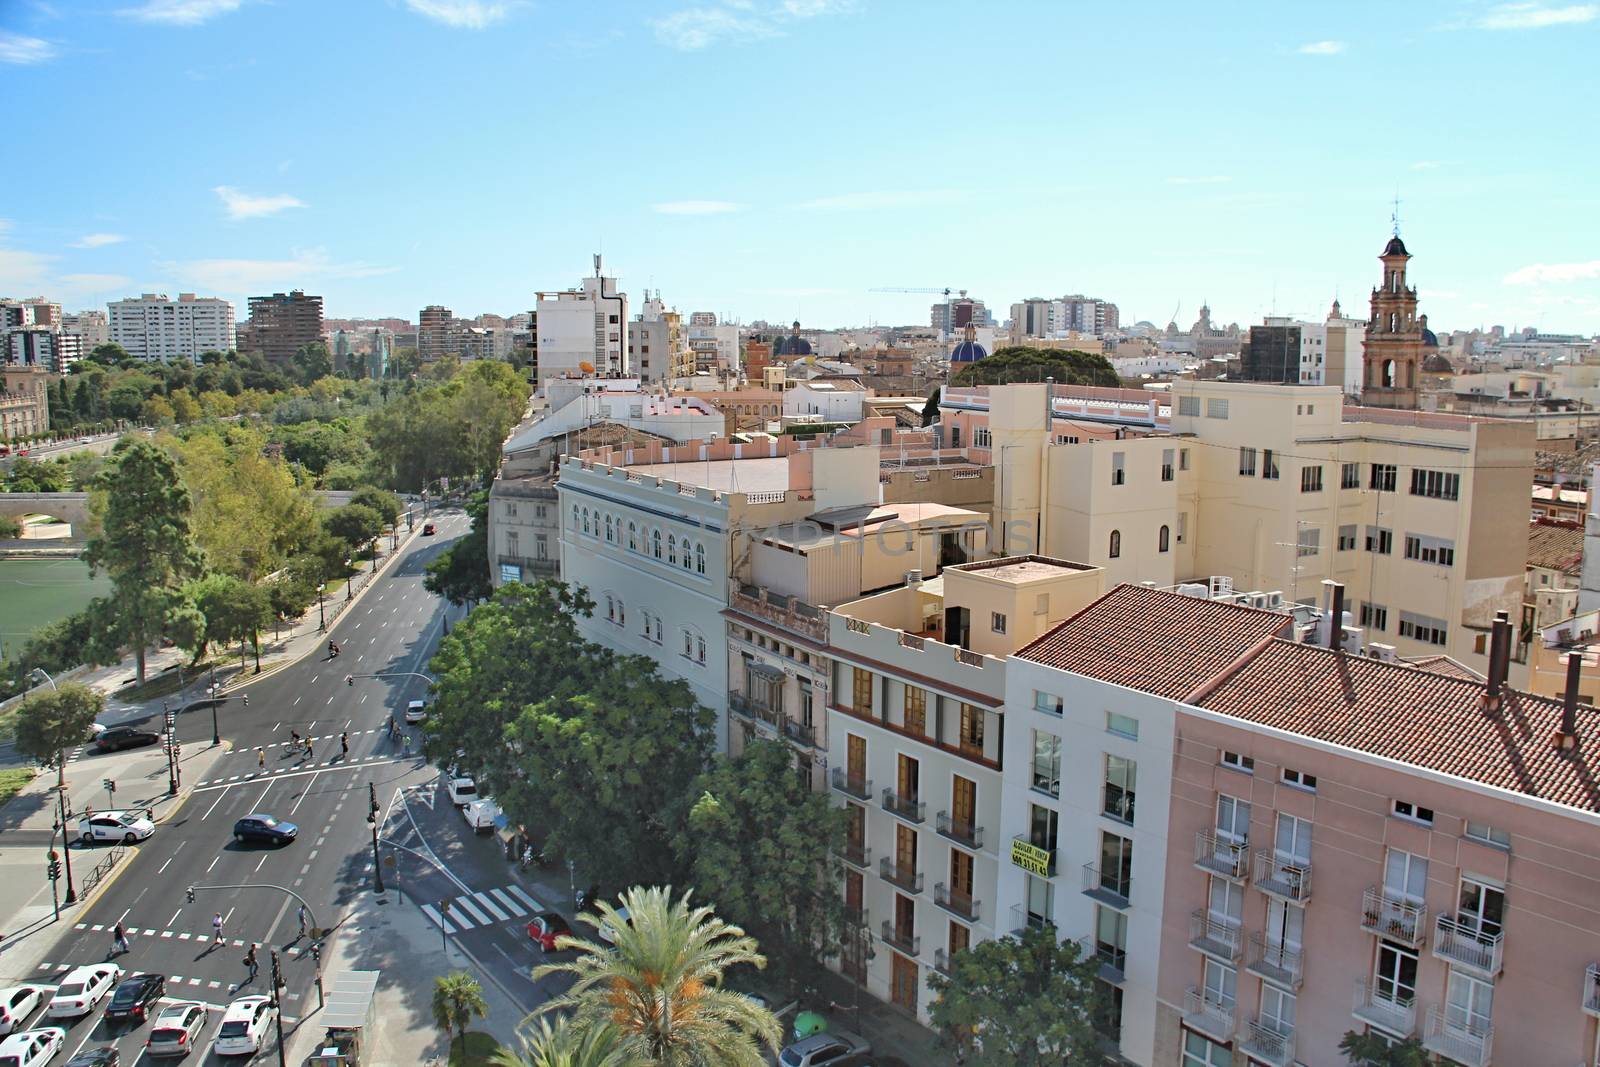 City of Valencia, Spain by Dermot68